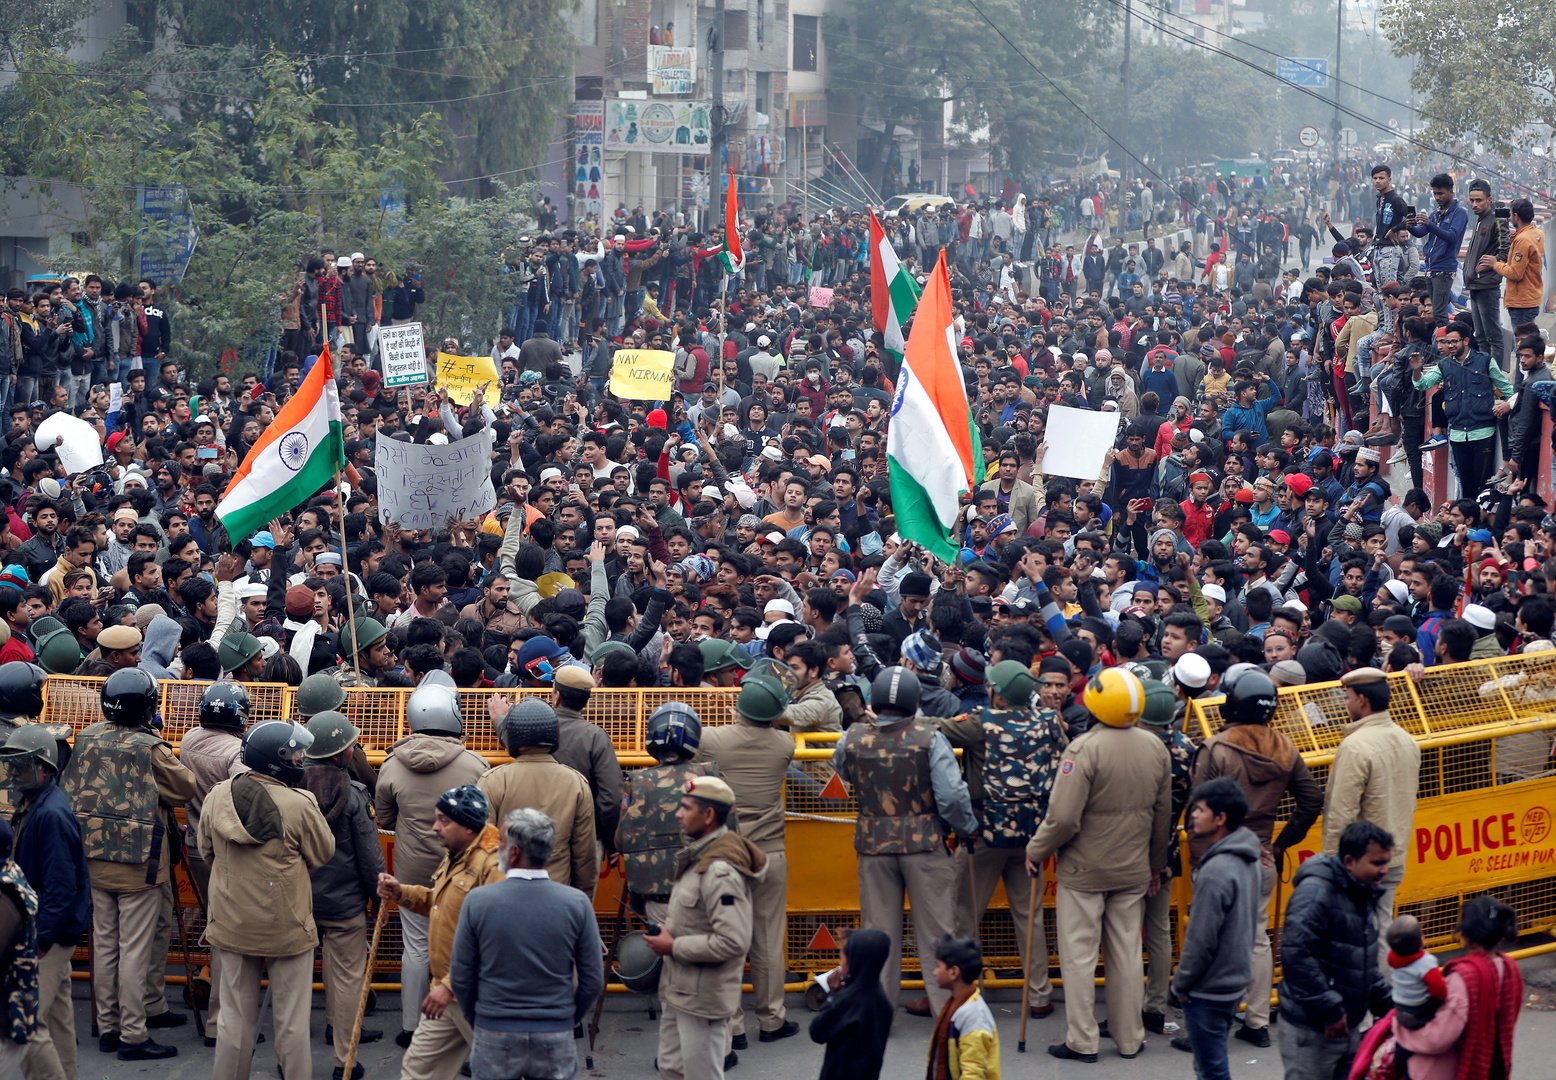 استمرار الاحتجاجات في الهند ضد قانون الجنسية